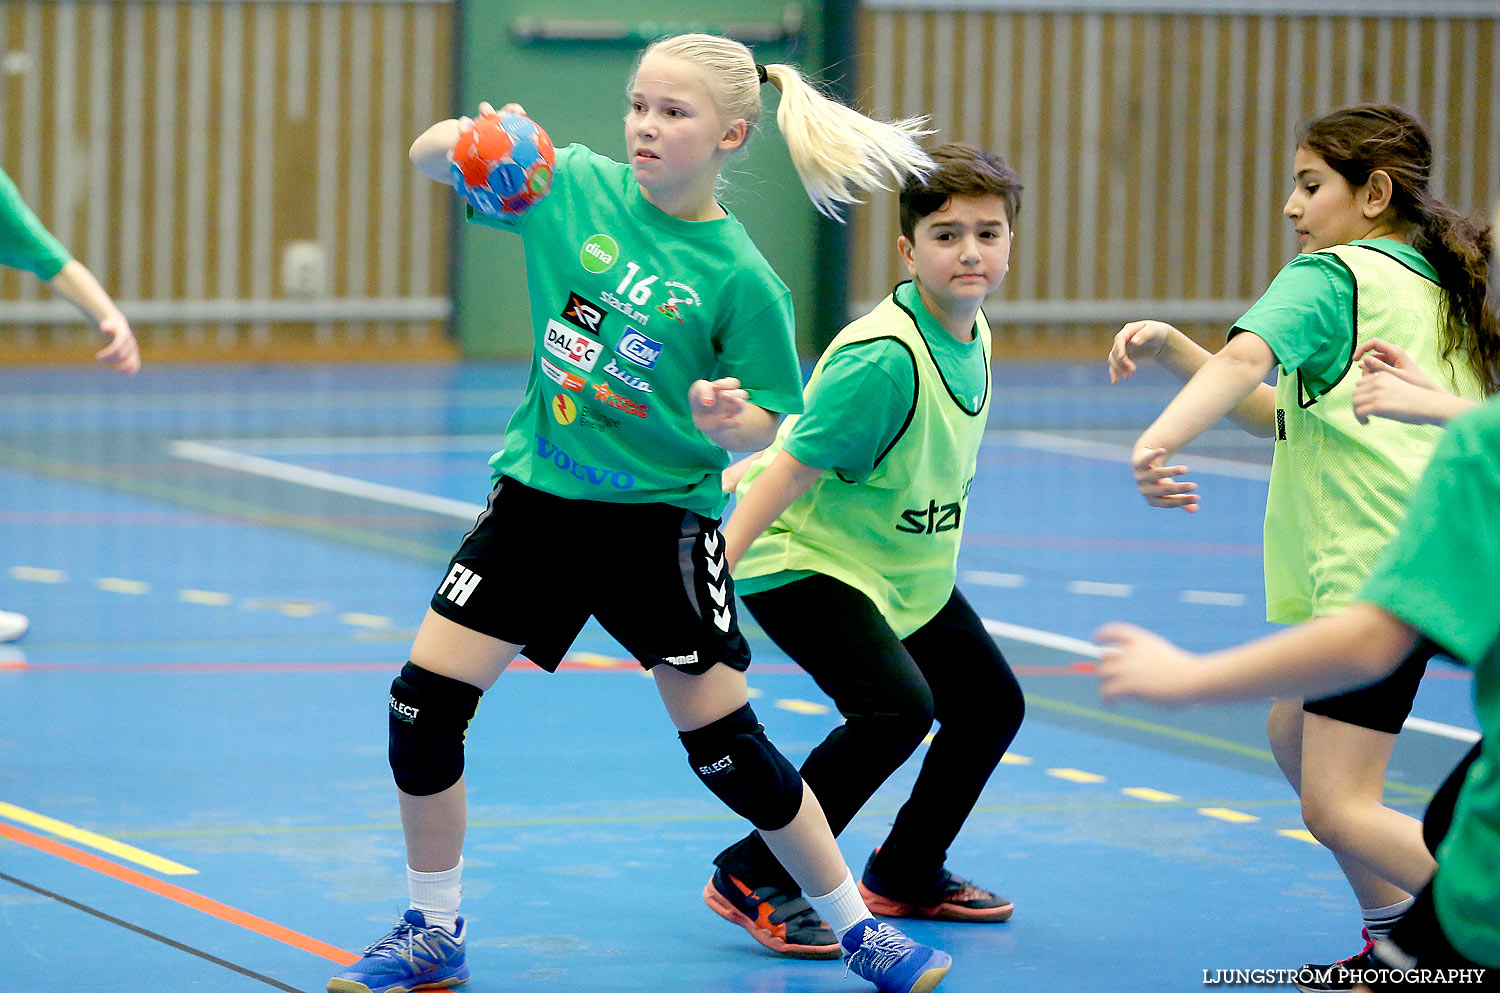 Klasshandboll Skövde 2016 Åldersklass 2005,mix,Arena Skövde,Skövde,Sverige,Handboll,,2016,133089